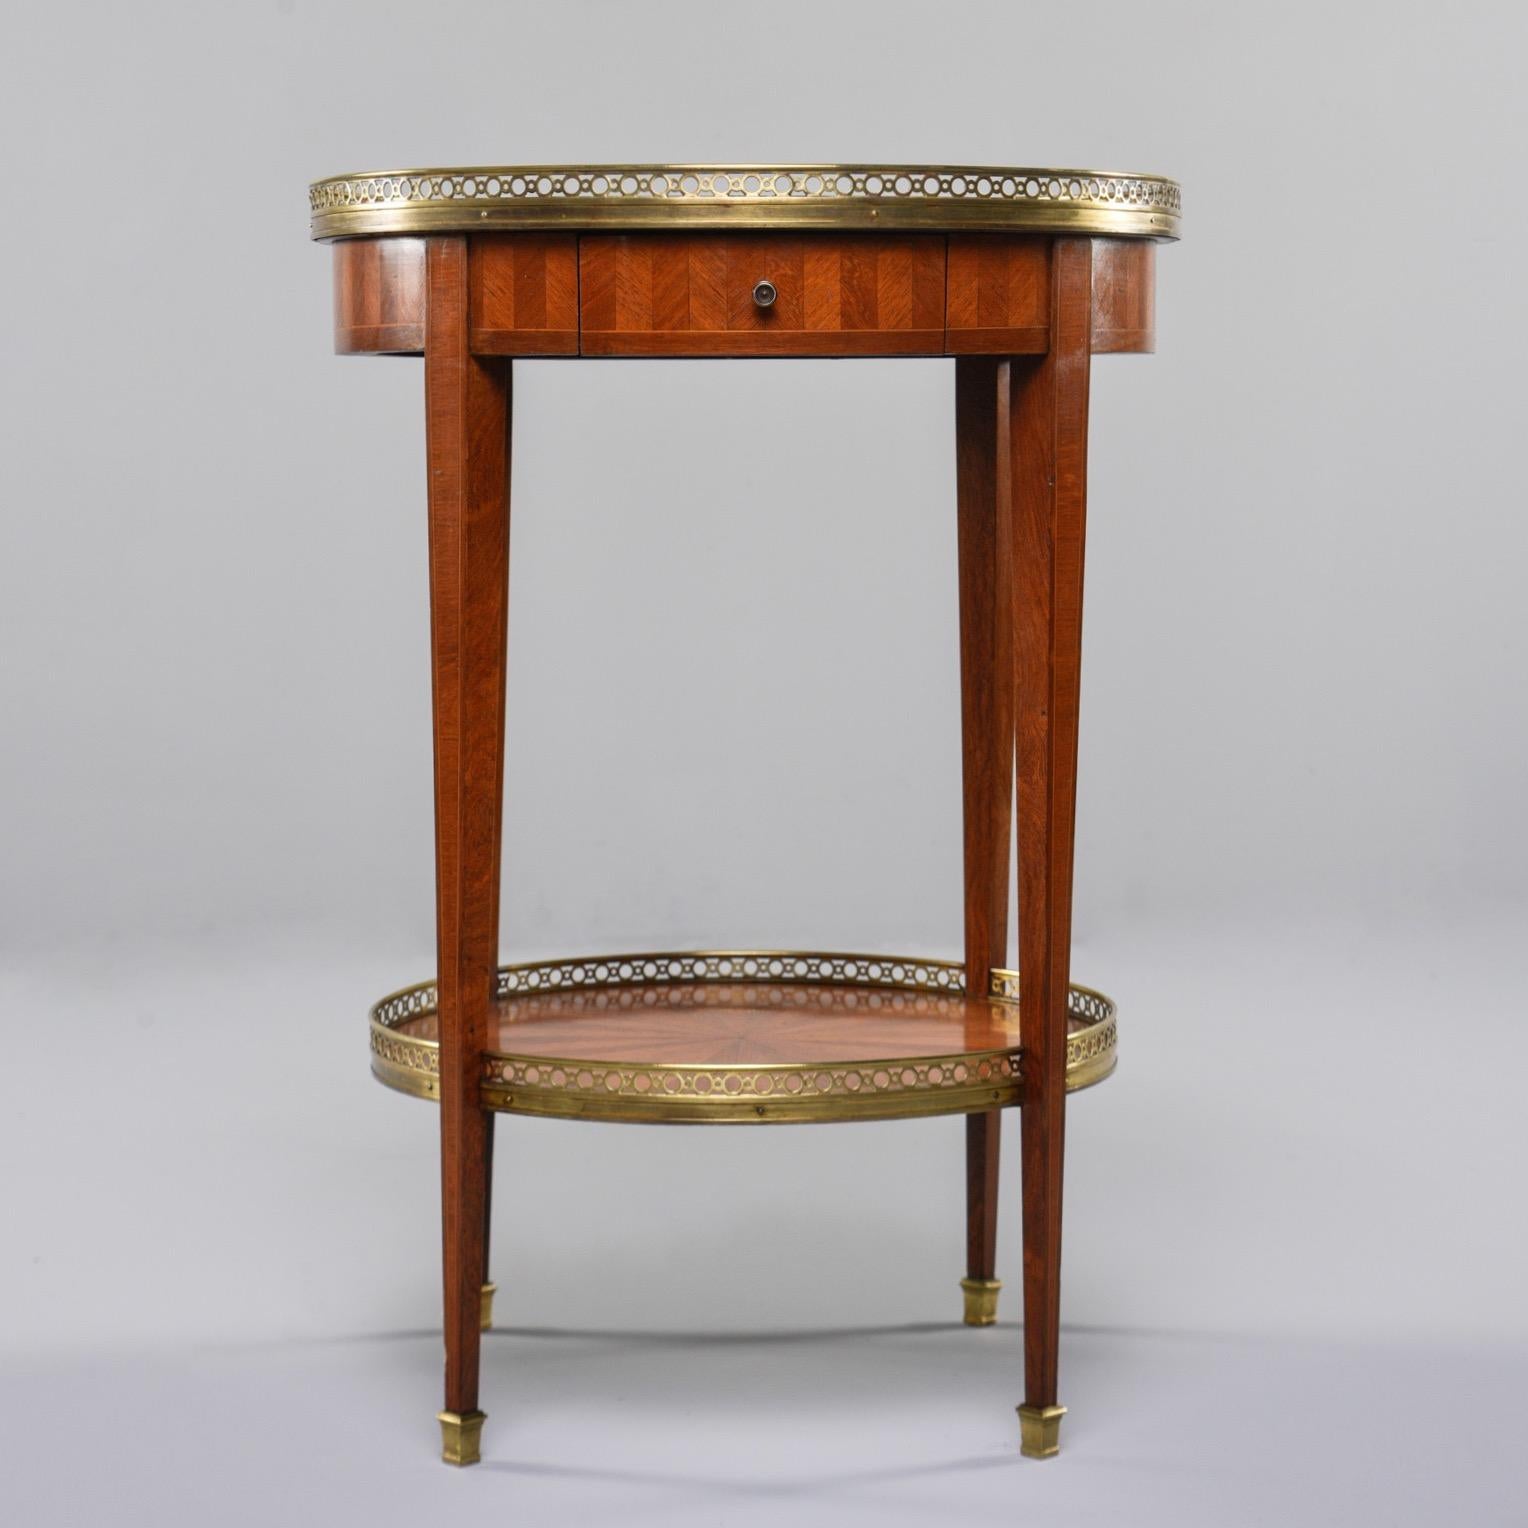 Französischer Gueridon aus Nussbaumholz mit umfangreichen Intarsien, um 1900. Die Tischplatte hat ein Schachbrettmuster, die Seiten haben ein Fischgrätenmuster und die untere Etage hat ein Sternchen-Muster. Einzelne funktionelle Schublade,